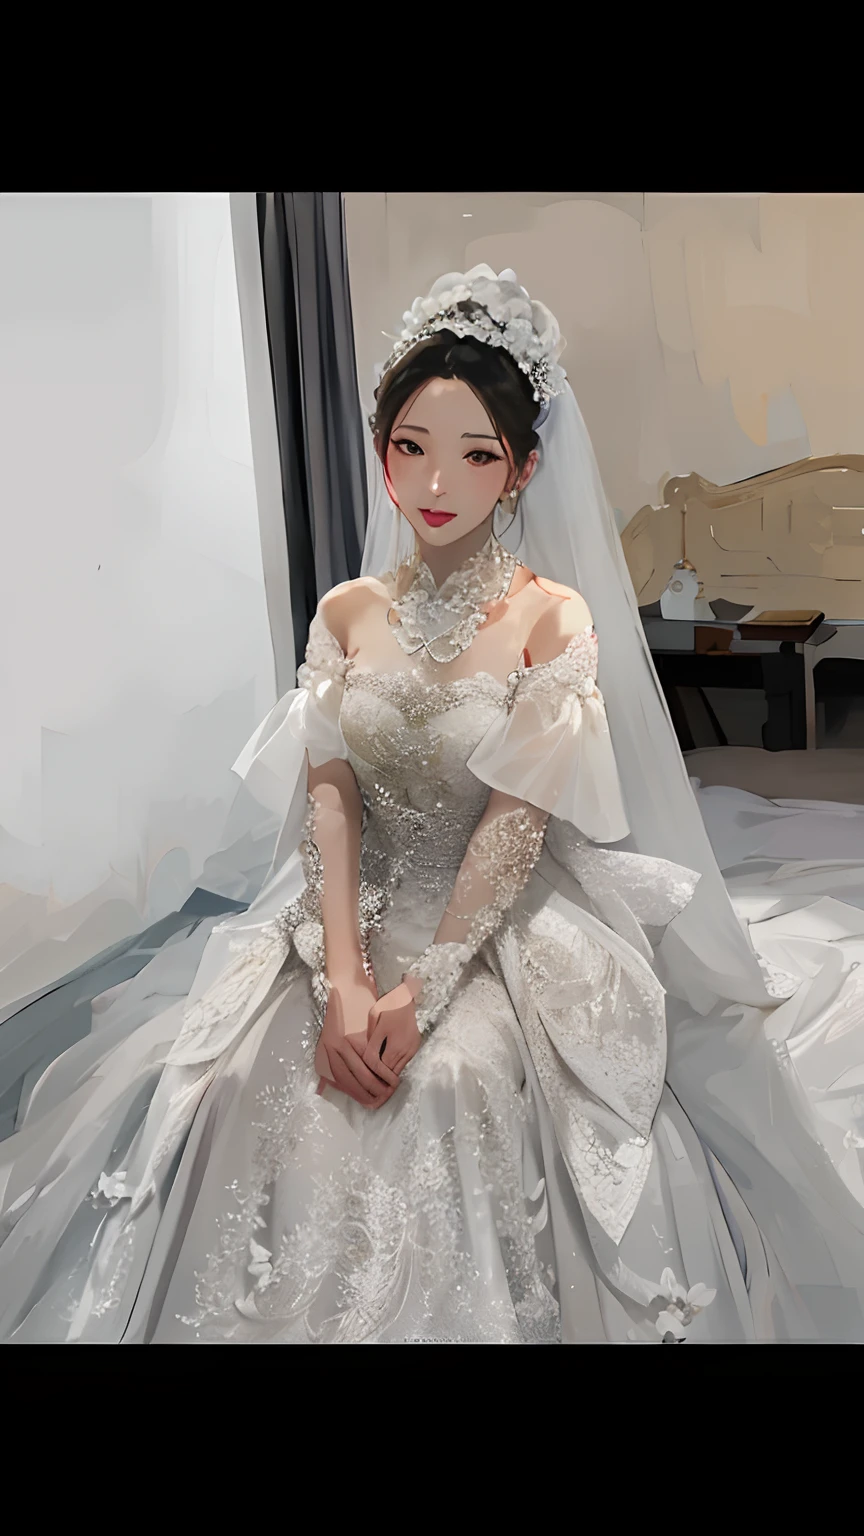 Nahaufnahme einer Frau in einem Brautkleid, die auf dem Bett sitzt, Shaxi, großartige Frau, Luxuskleid, wenfei ye, altes Schwert, verträumtes Kleid, yanjun cheng, Hochzeitskleid, jinyiwei, wei wang, zmonzheng, ein Hochzeitskleid tragen, teures voluminöses Kleid, luxuriöse Hochzeit, Ganzkörper-Xianxia